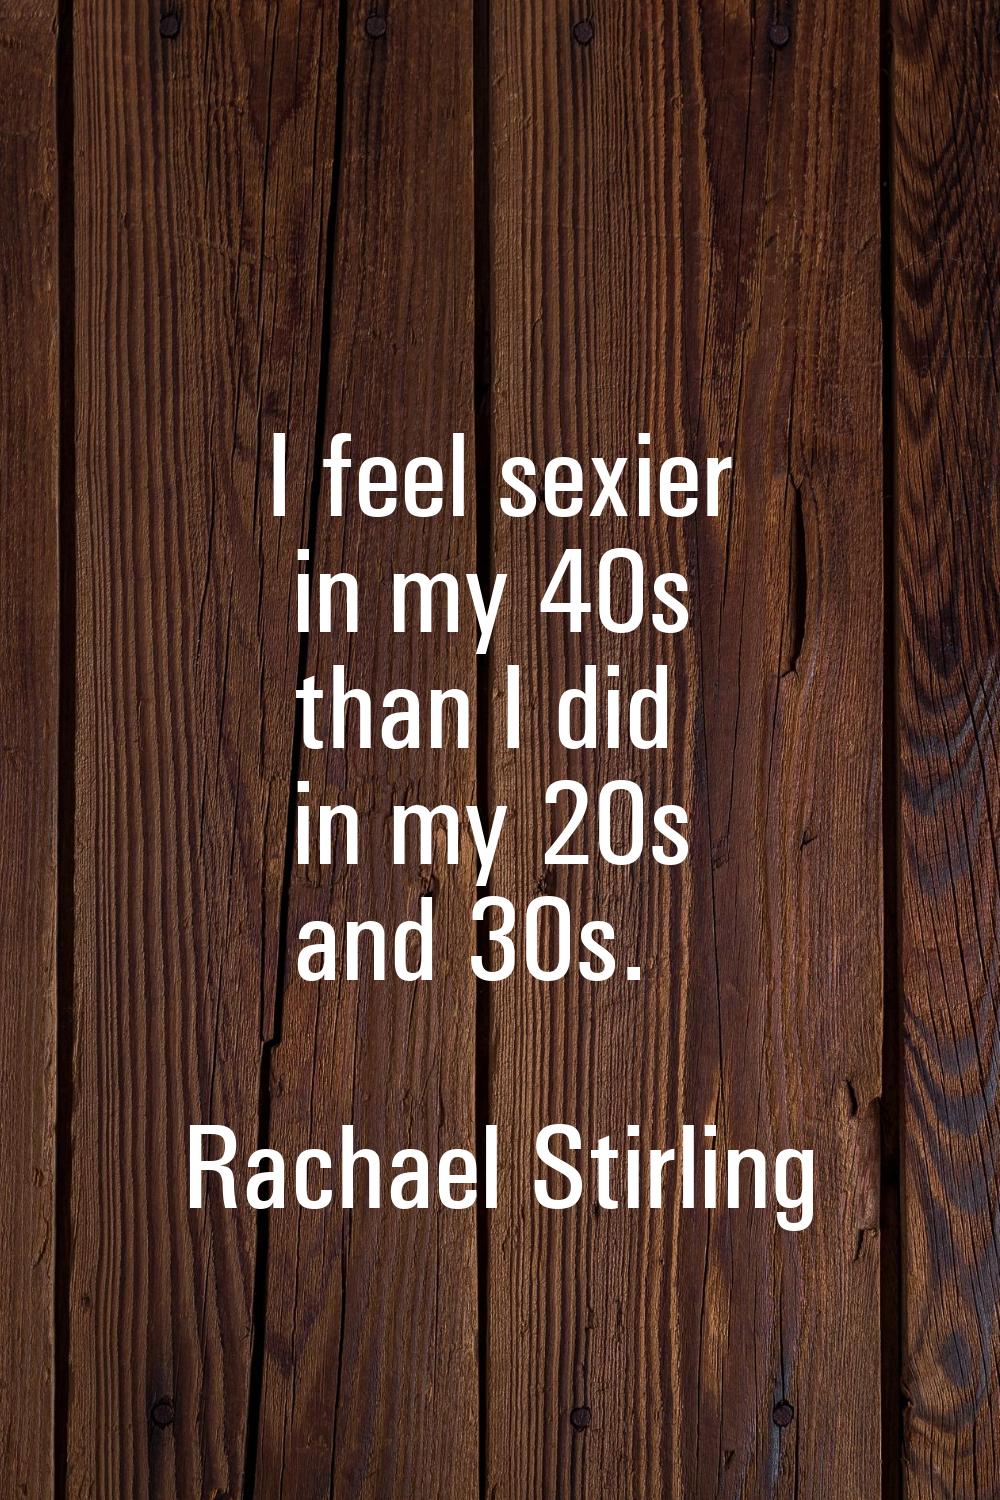 I feel sexier in my 40s than I did in my 20s and 30s.